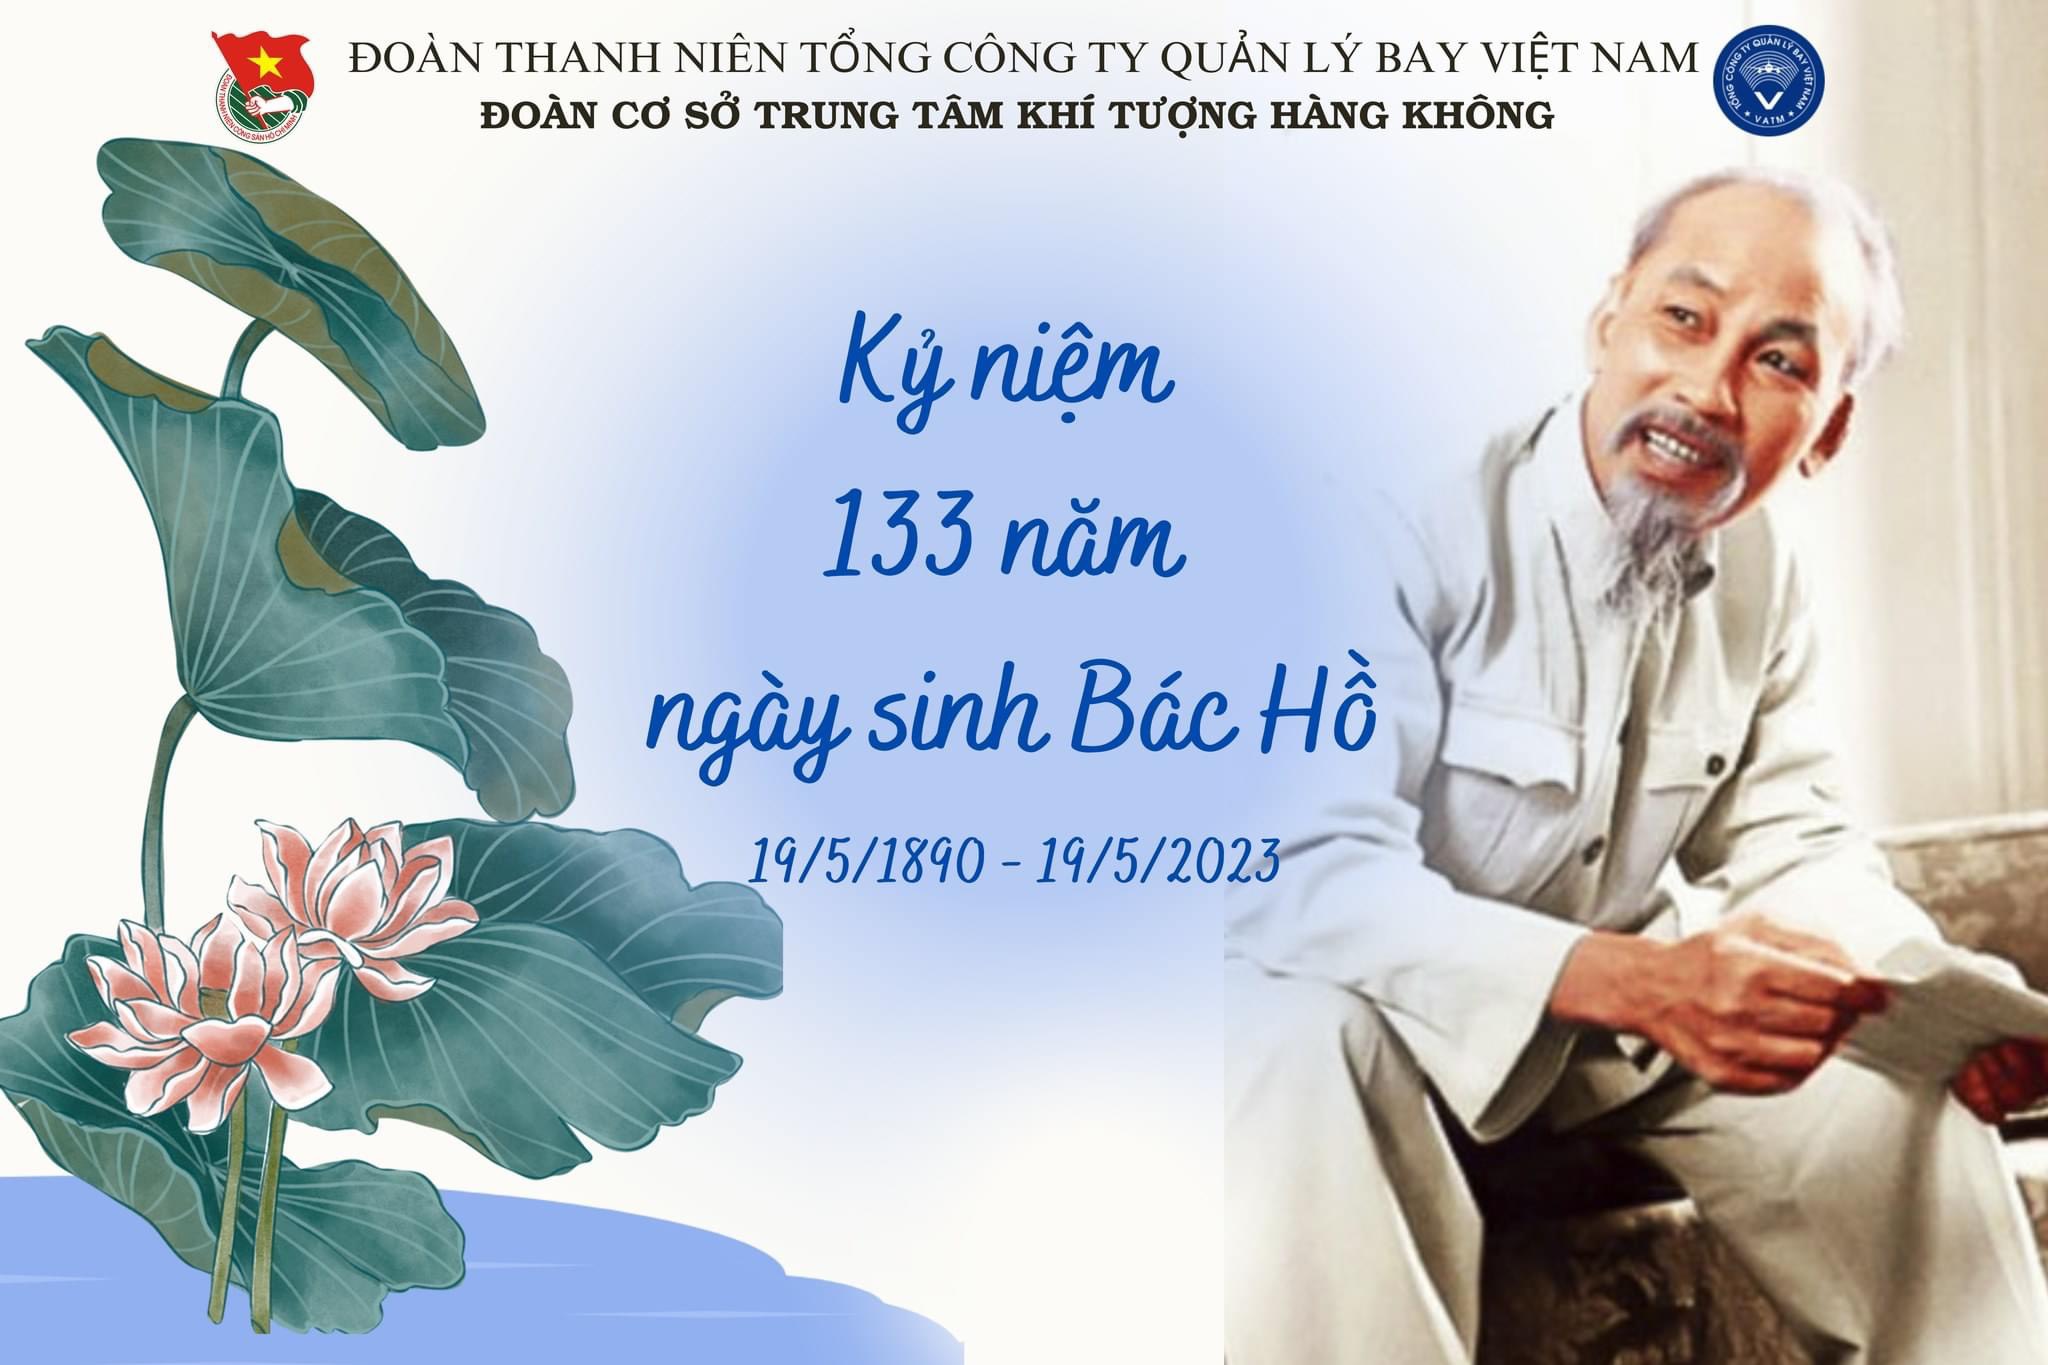 Trung tâm Khí tượng Hàng không dâng hương tưởng nhớ Chủ tich Hồ Chí Minh nhân dịp sinh nhật Bác